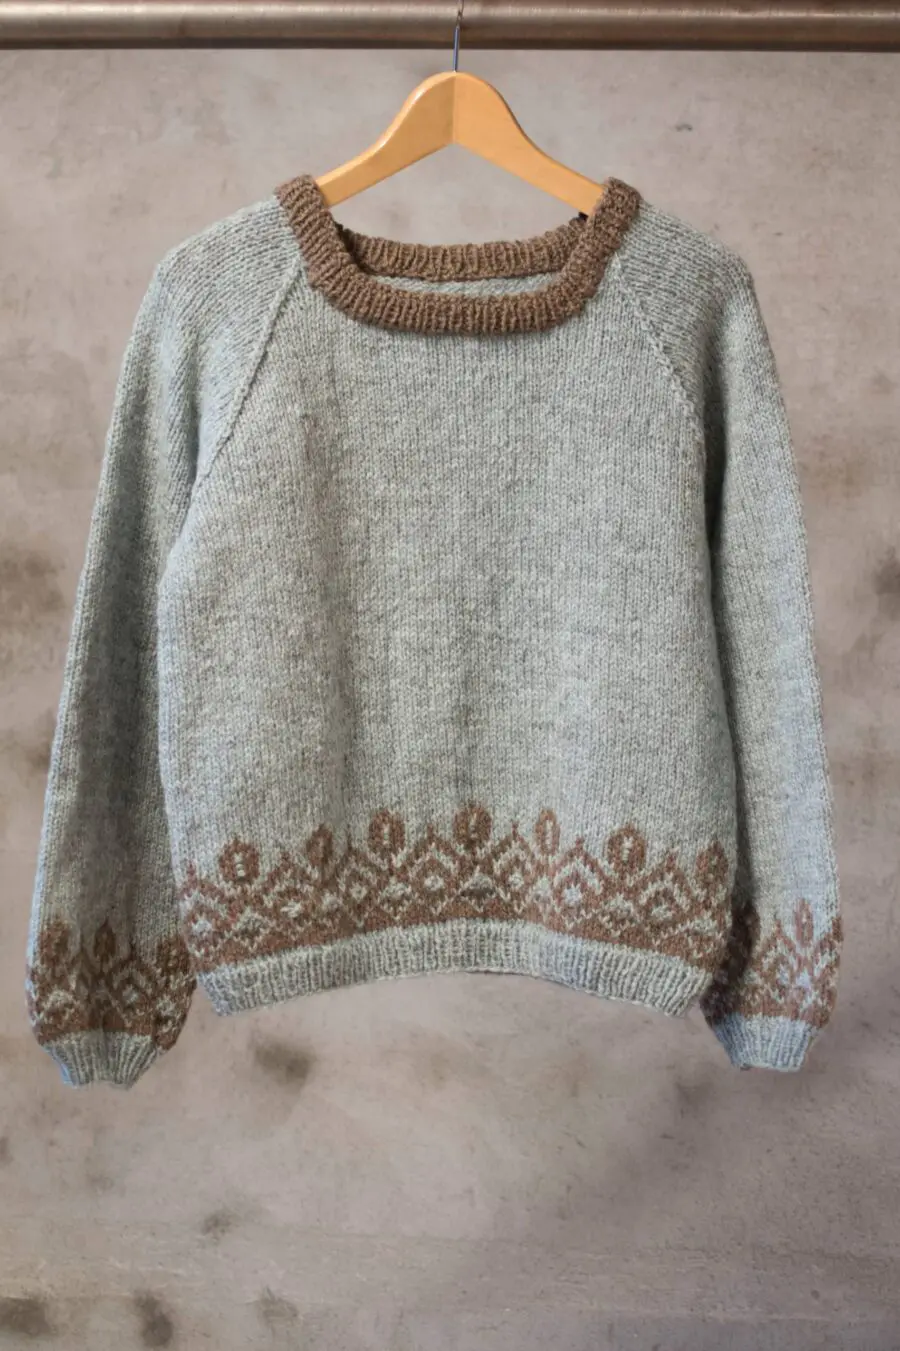 Stølsbu-Pullover aus Varde gestrickt. Weicher und schöner Pullover